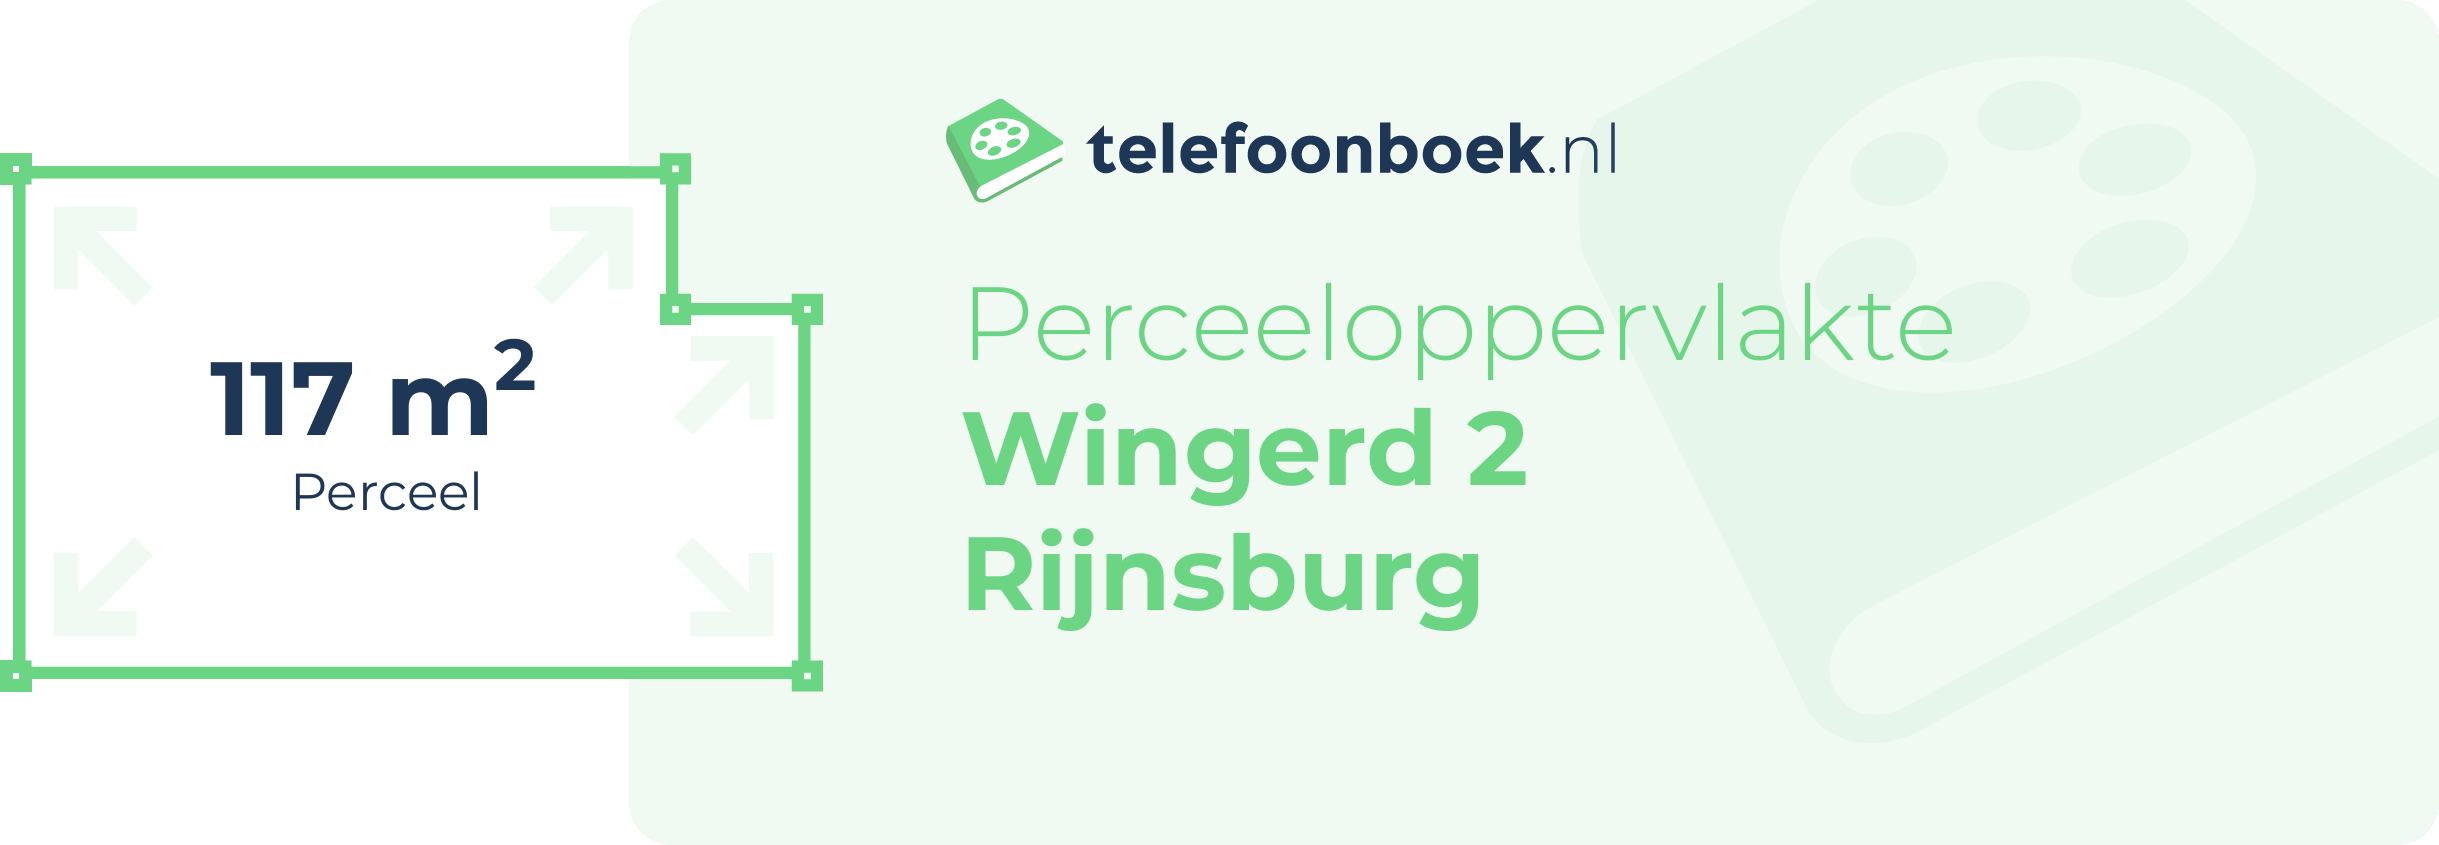 Perceeloppervlakte Wingerd 2 Rijnsburg